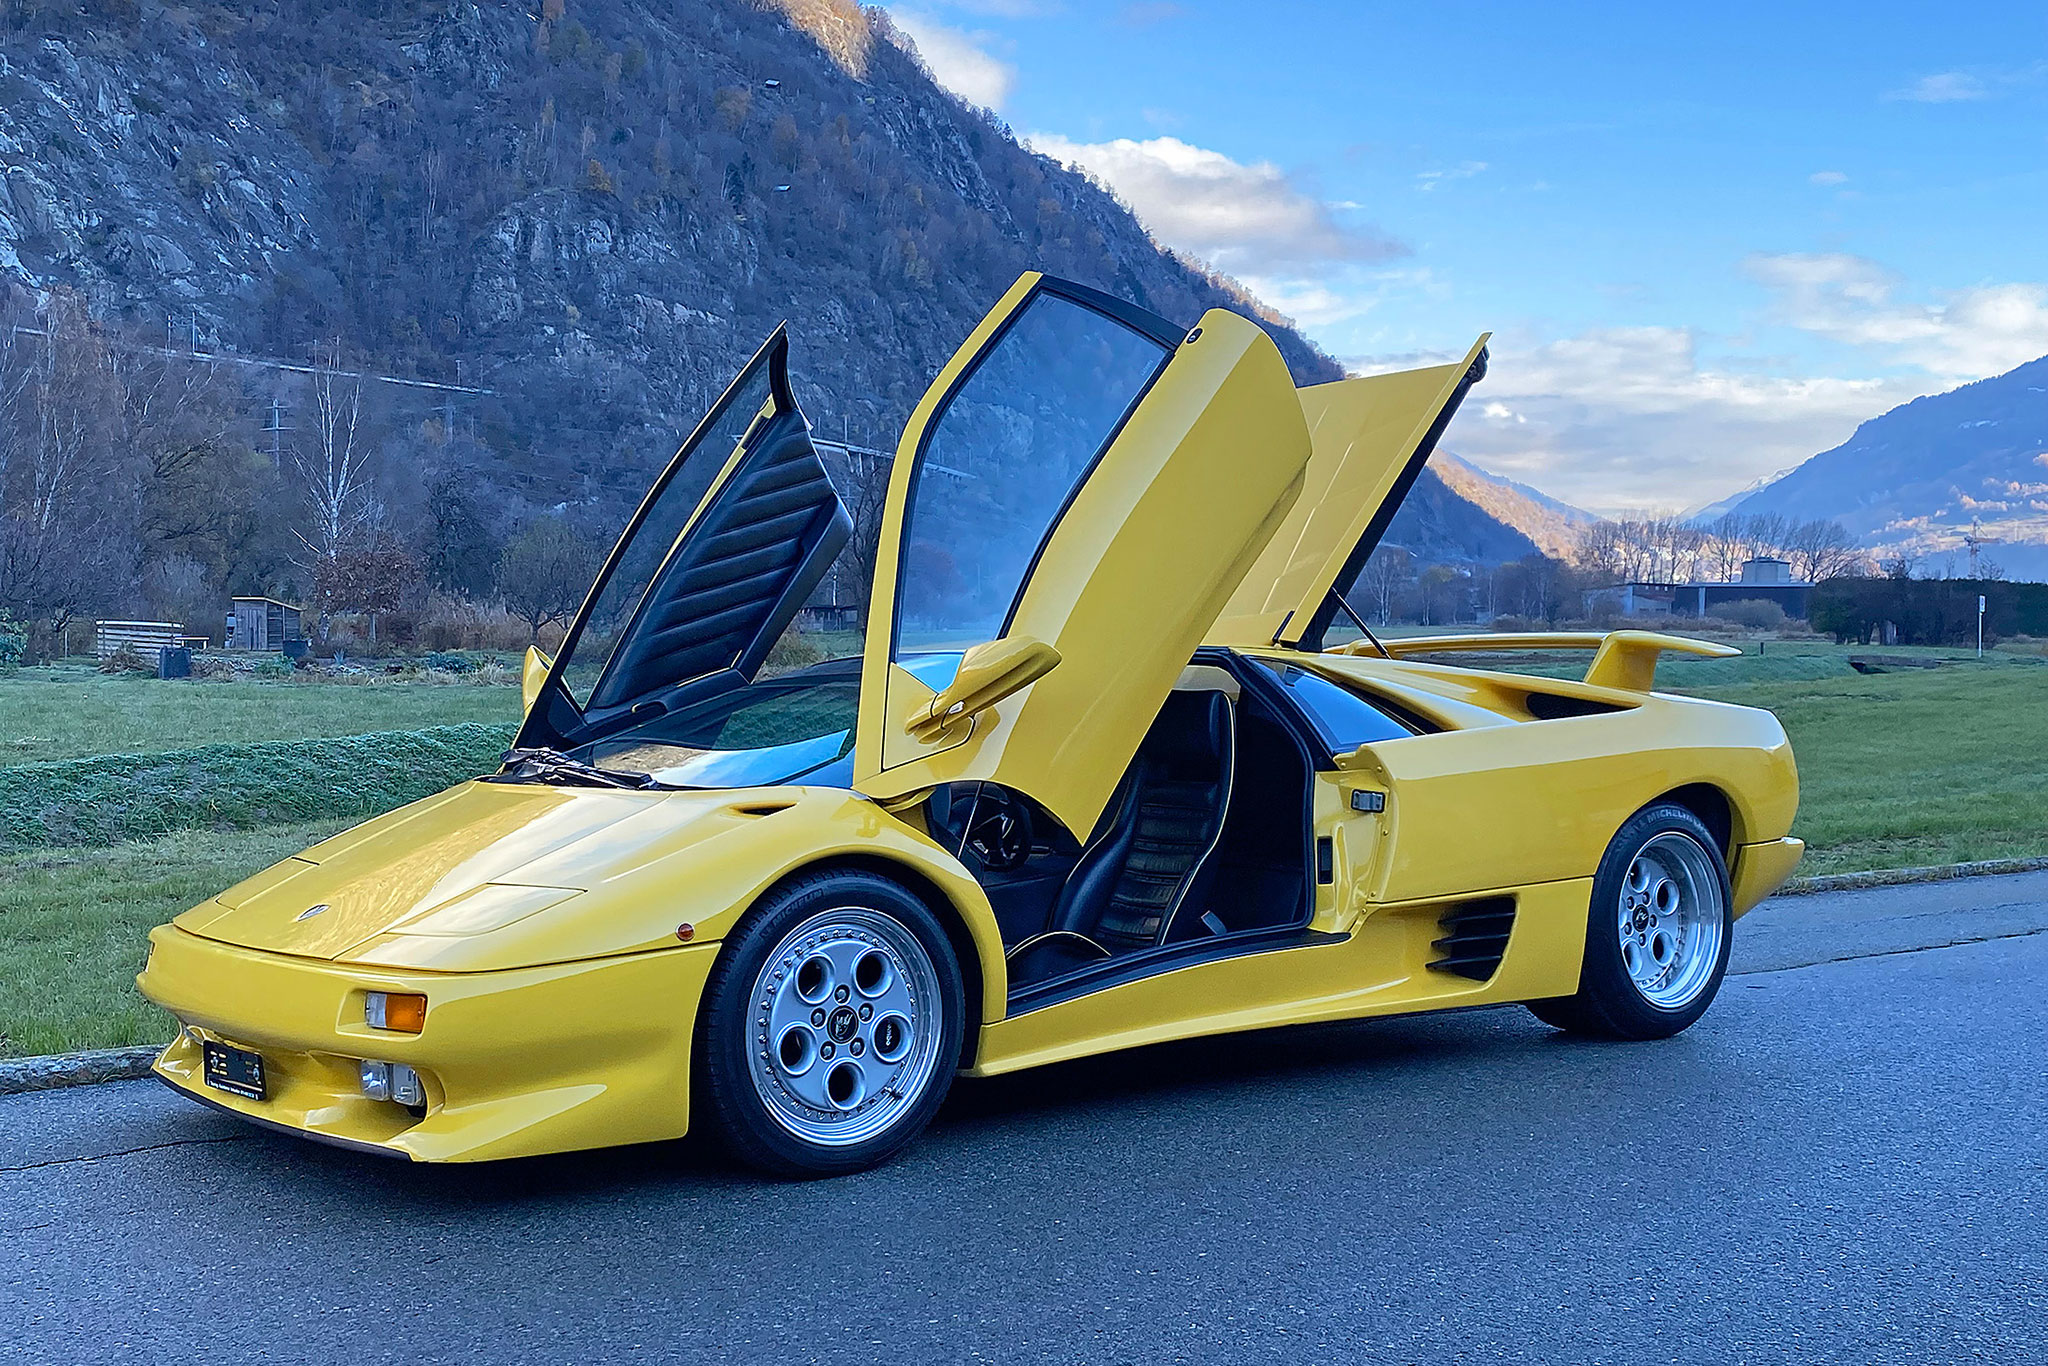 1996 Lamborghini Diablo VT à transmission intégrale pour que les 492 chevaux puissent s’exprimer.